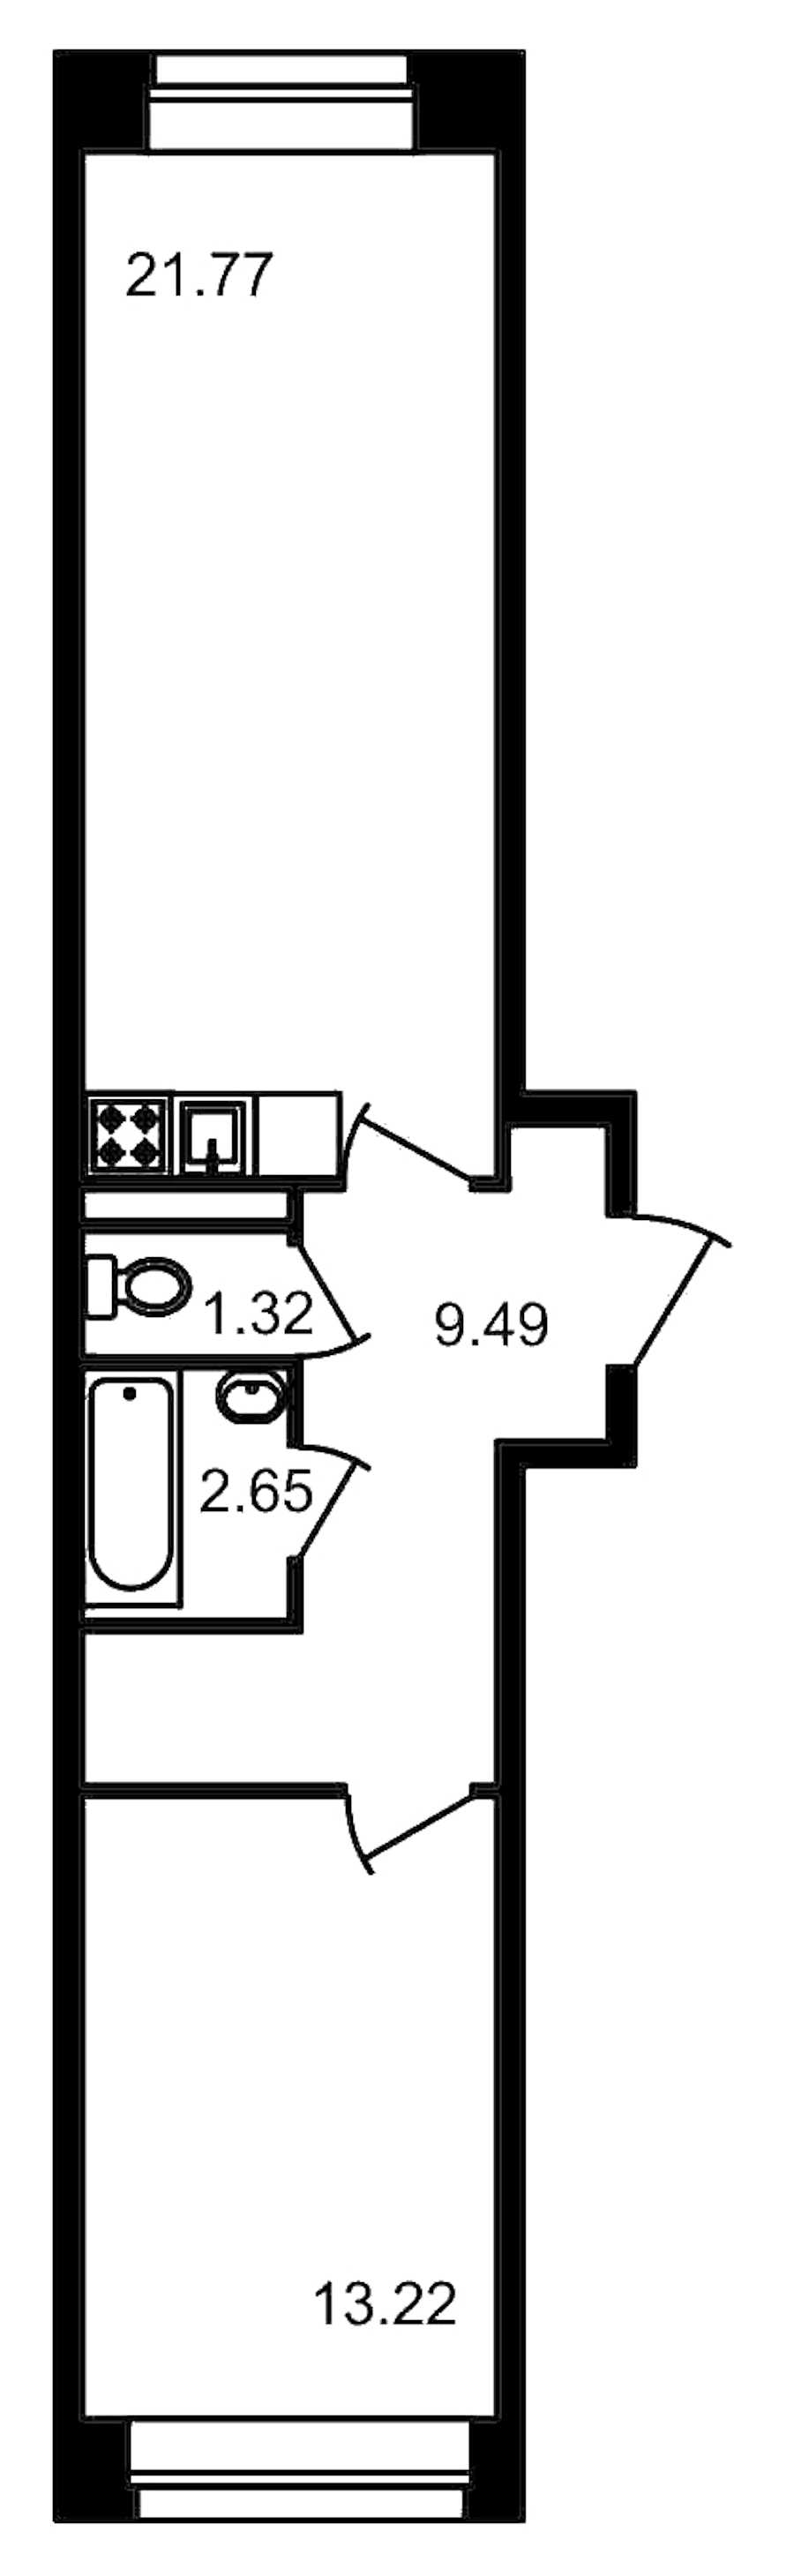 Однокомнатная квартира в ЦДС: площадь 48.45 м2 , этаж: 1 – купить в Санкт-Петербурге